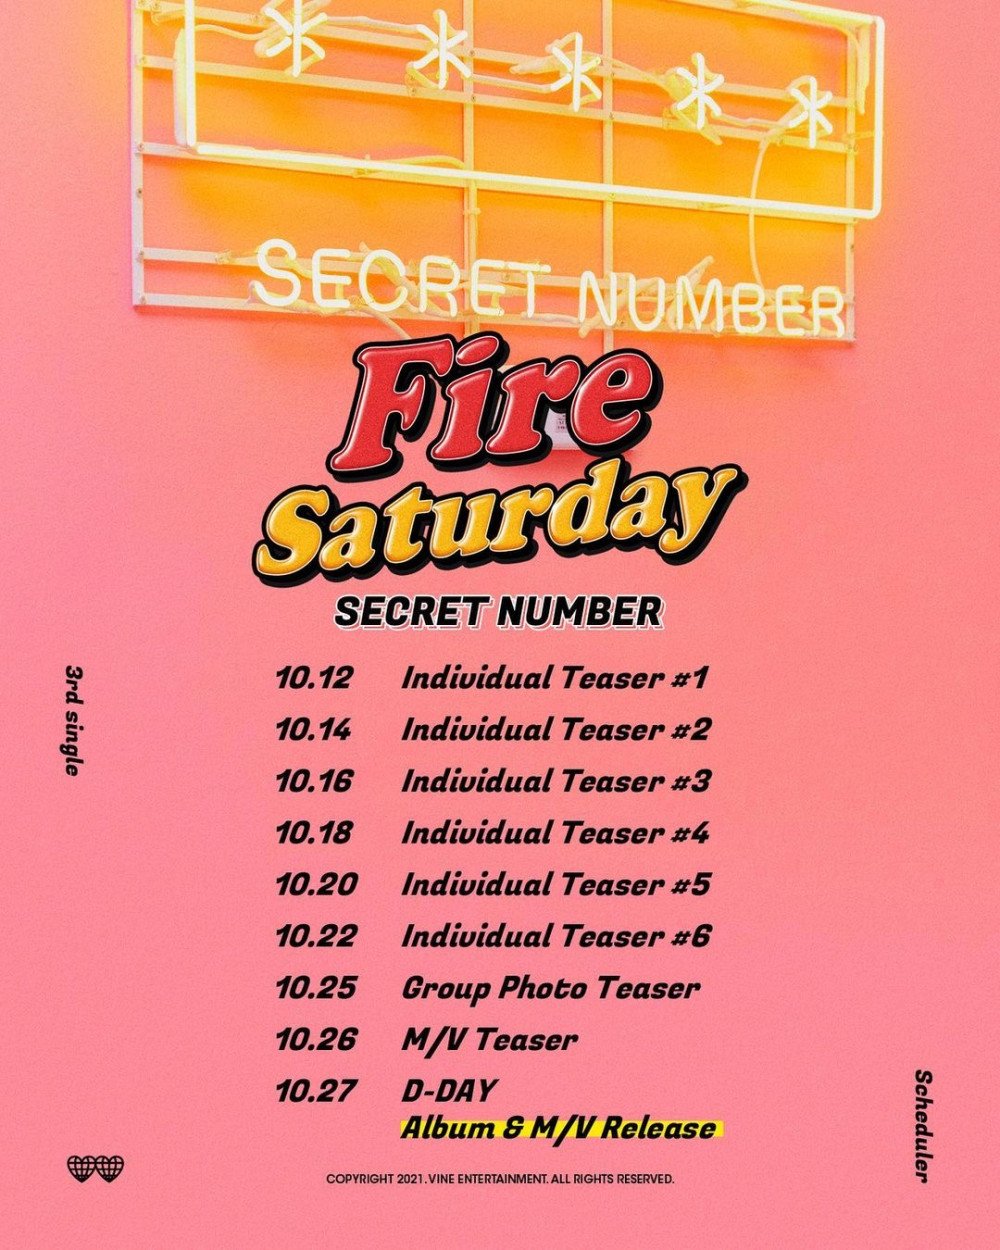 [Камбэк] Secret Number сингл-альбом «Fire Saturday»: музыкальный клип (перфоманс-версия)